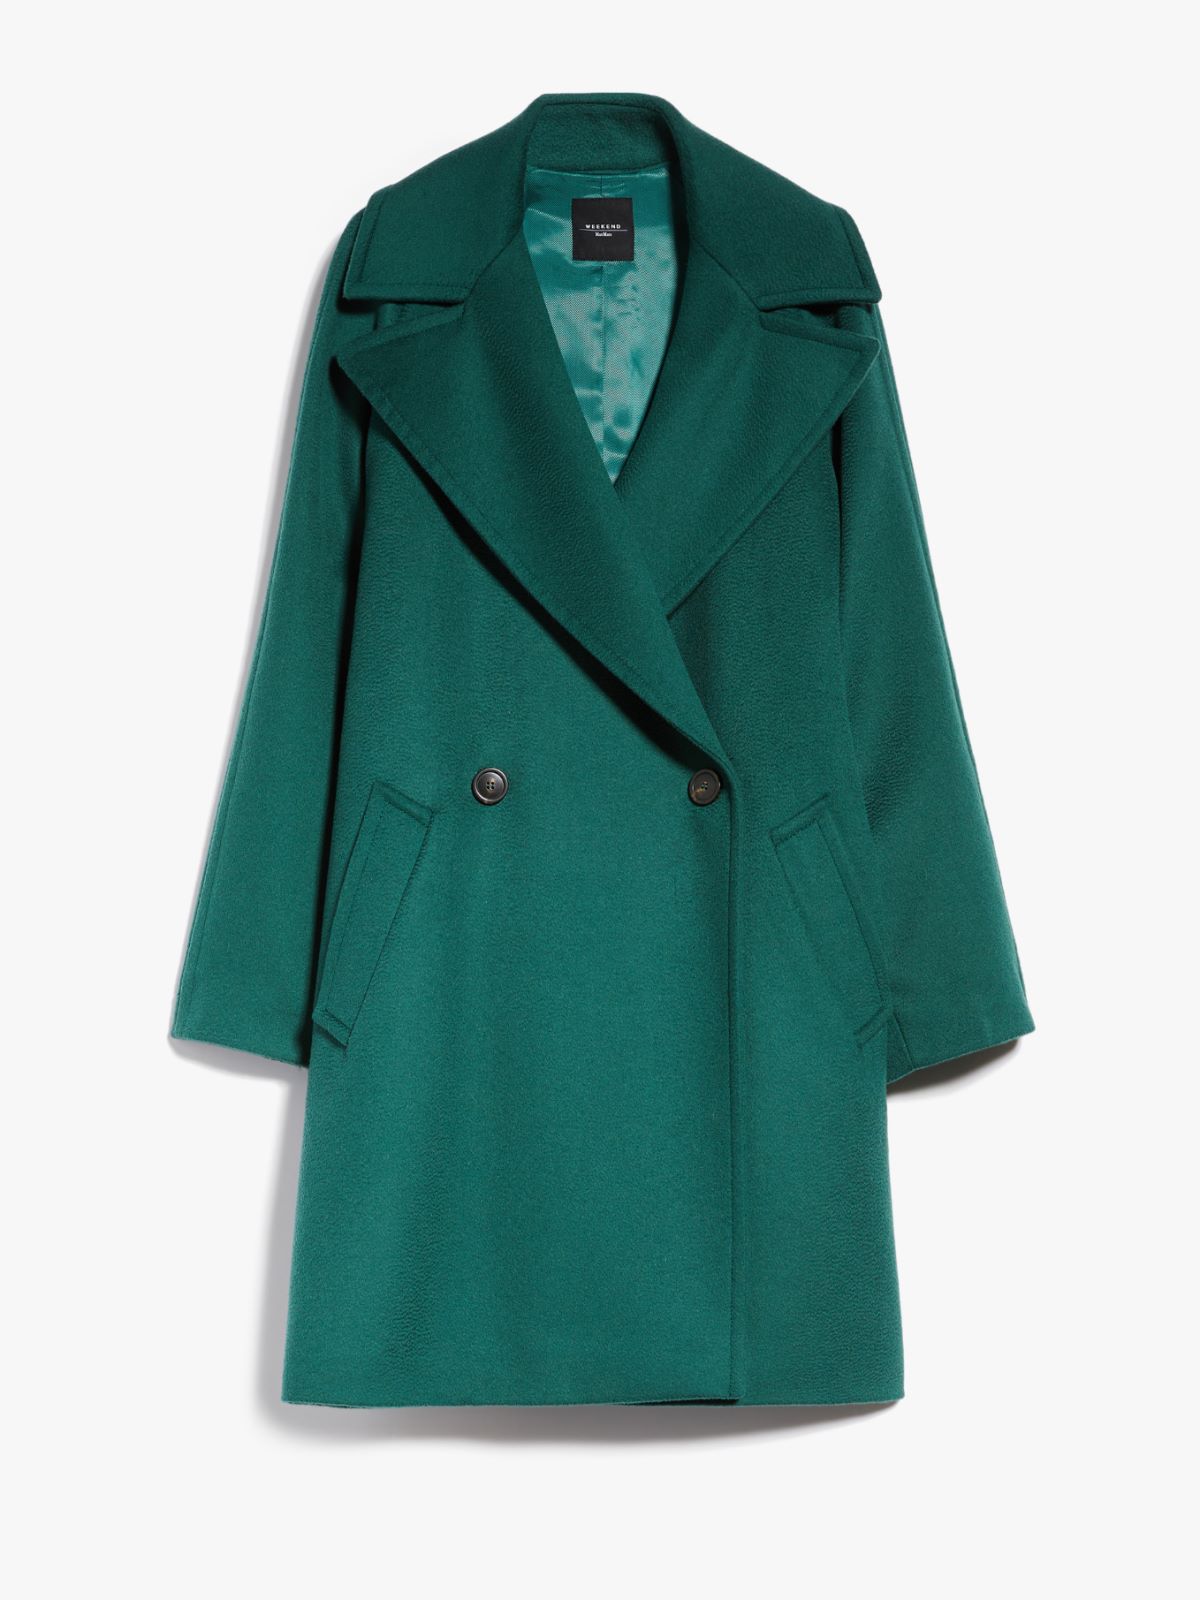 Wool broadcloth coat, green | Weekend Max Mara